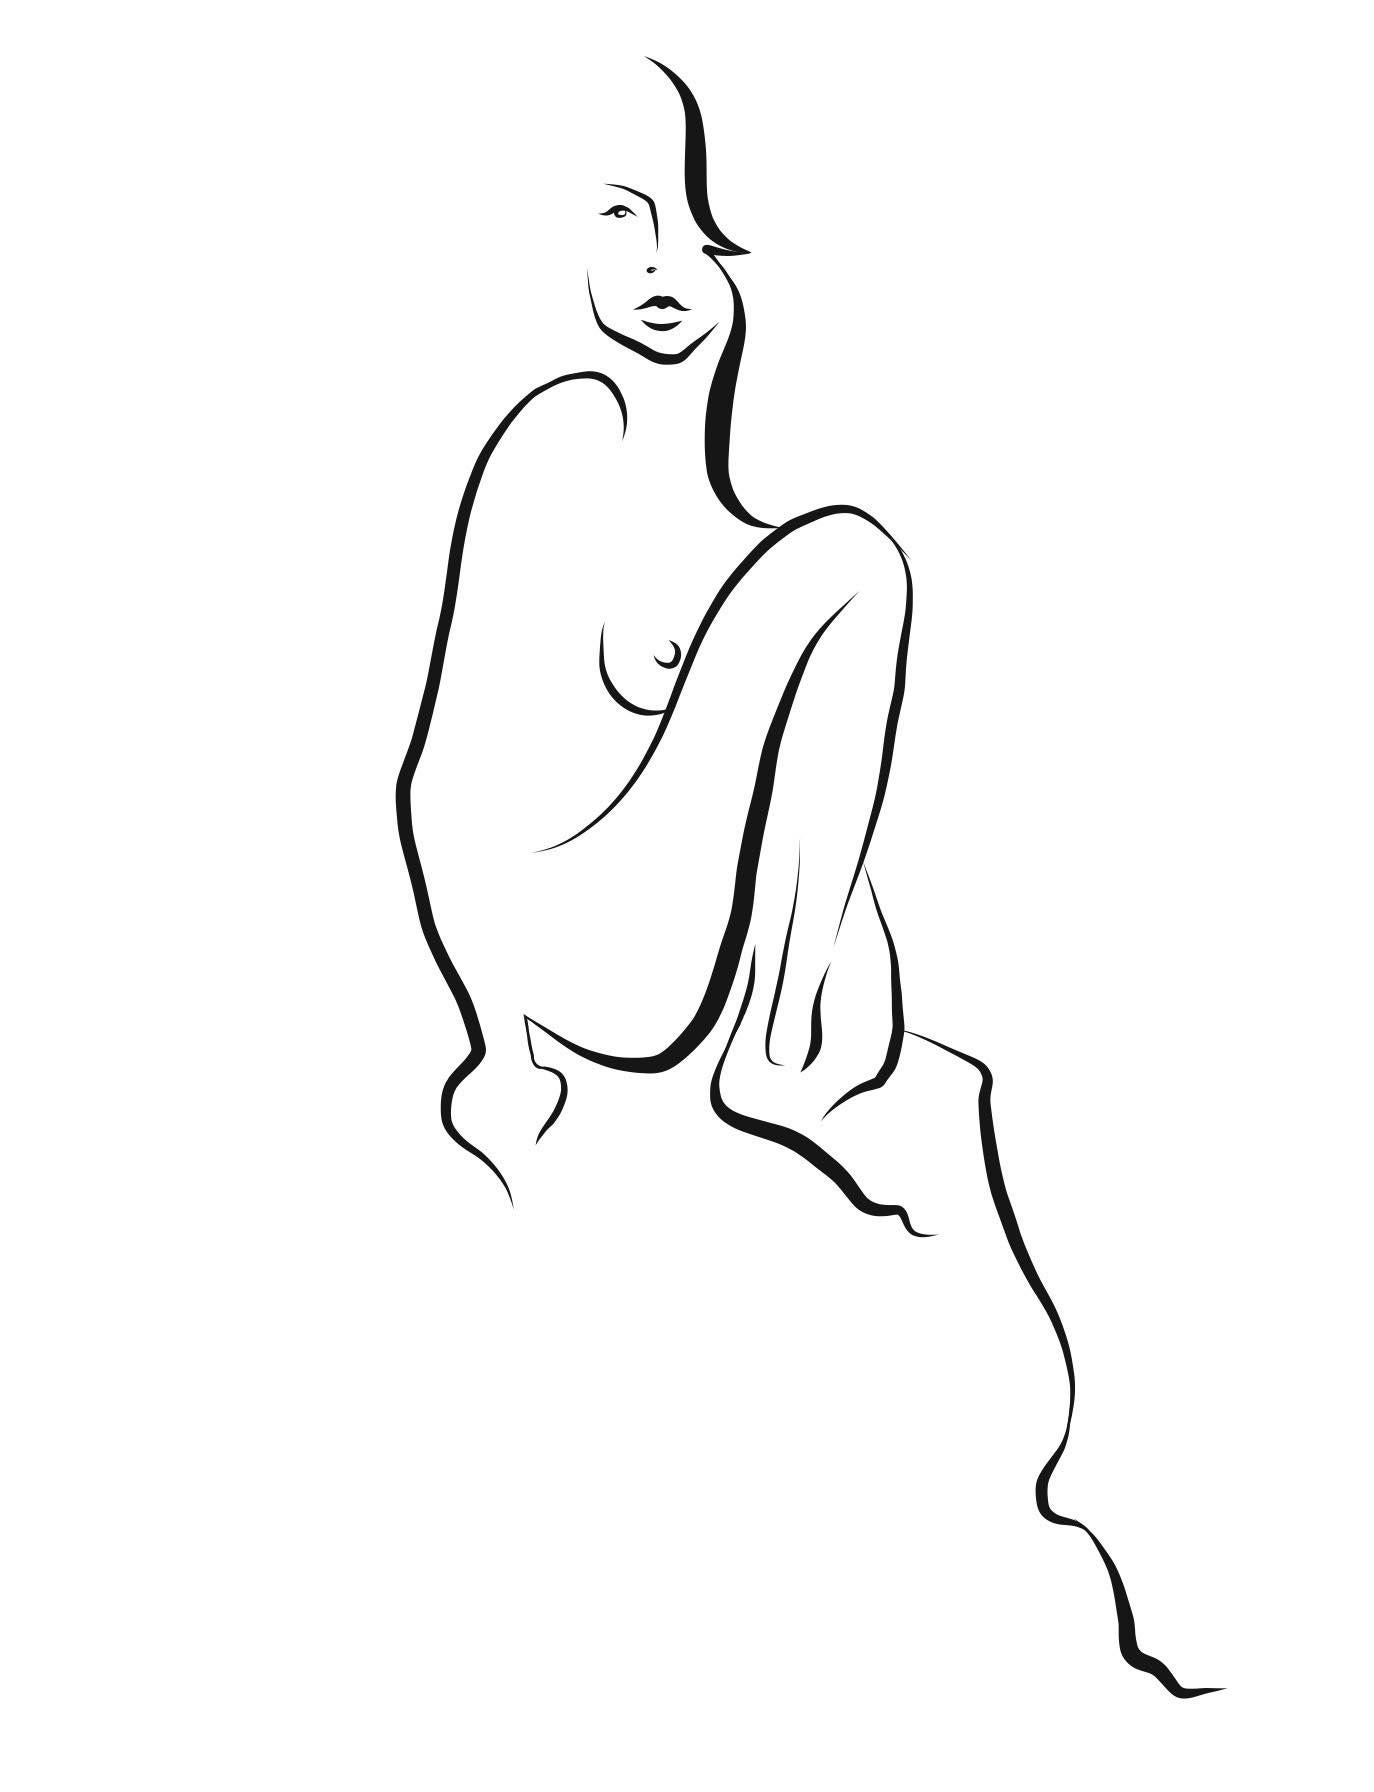 Haiku #20 - Digital Vector Drawing Sitting Female Nude Woman Figure Knee Raised - Art by Michael Binkley